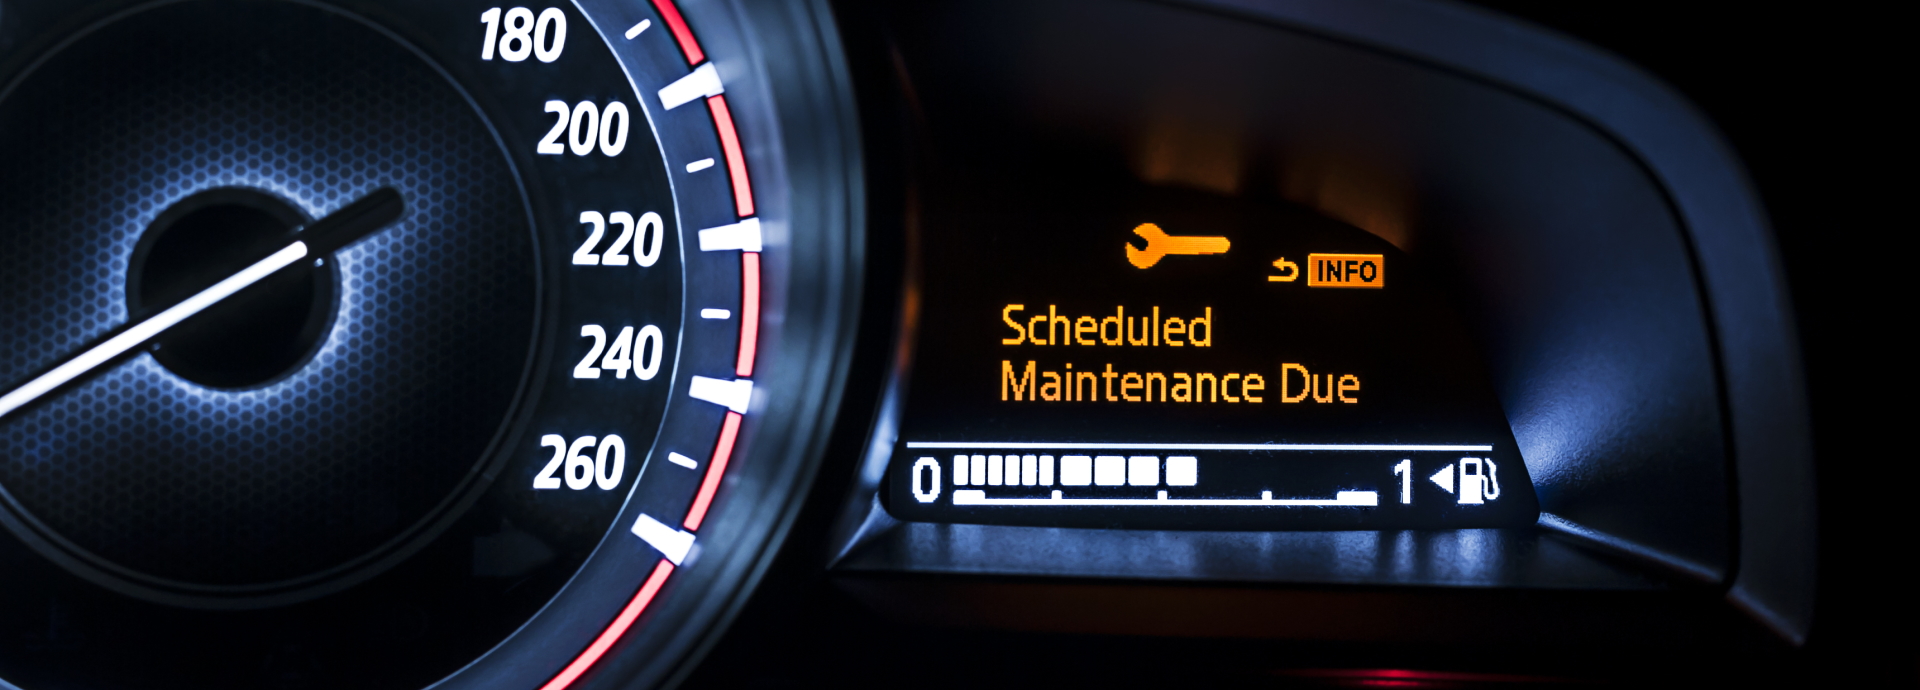 Scheduled Maintenance info in a car